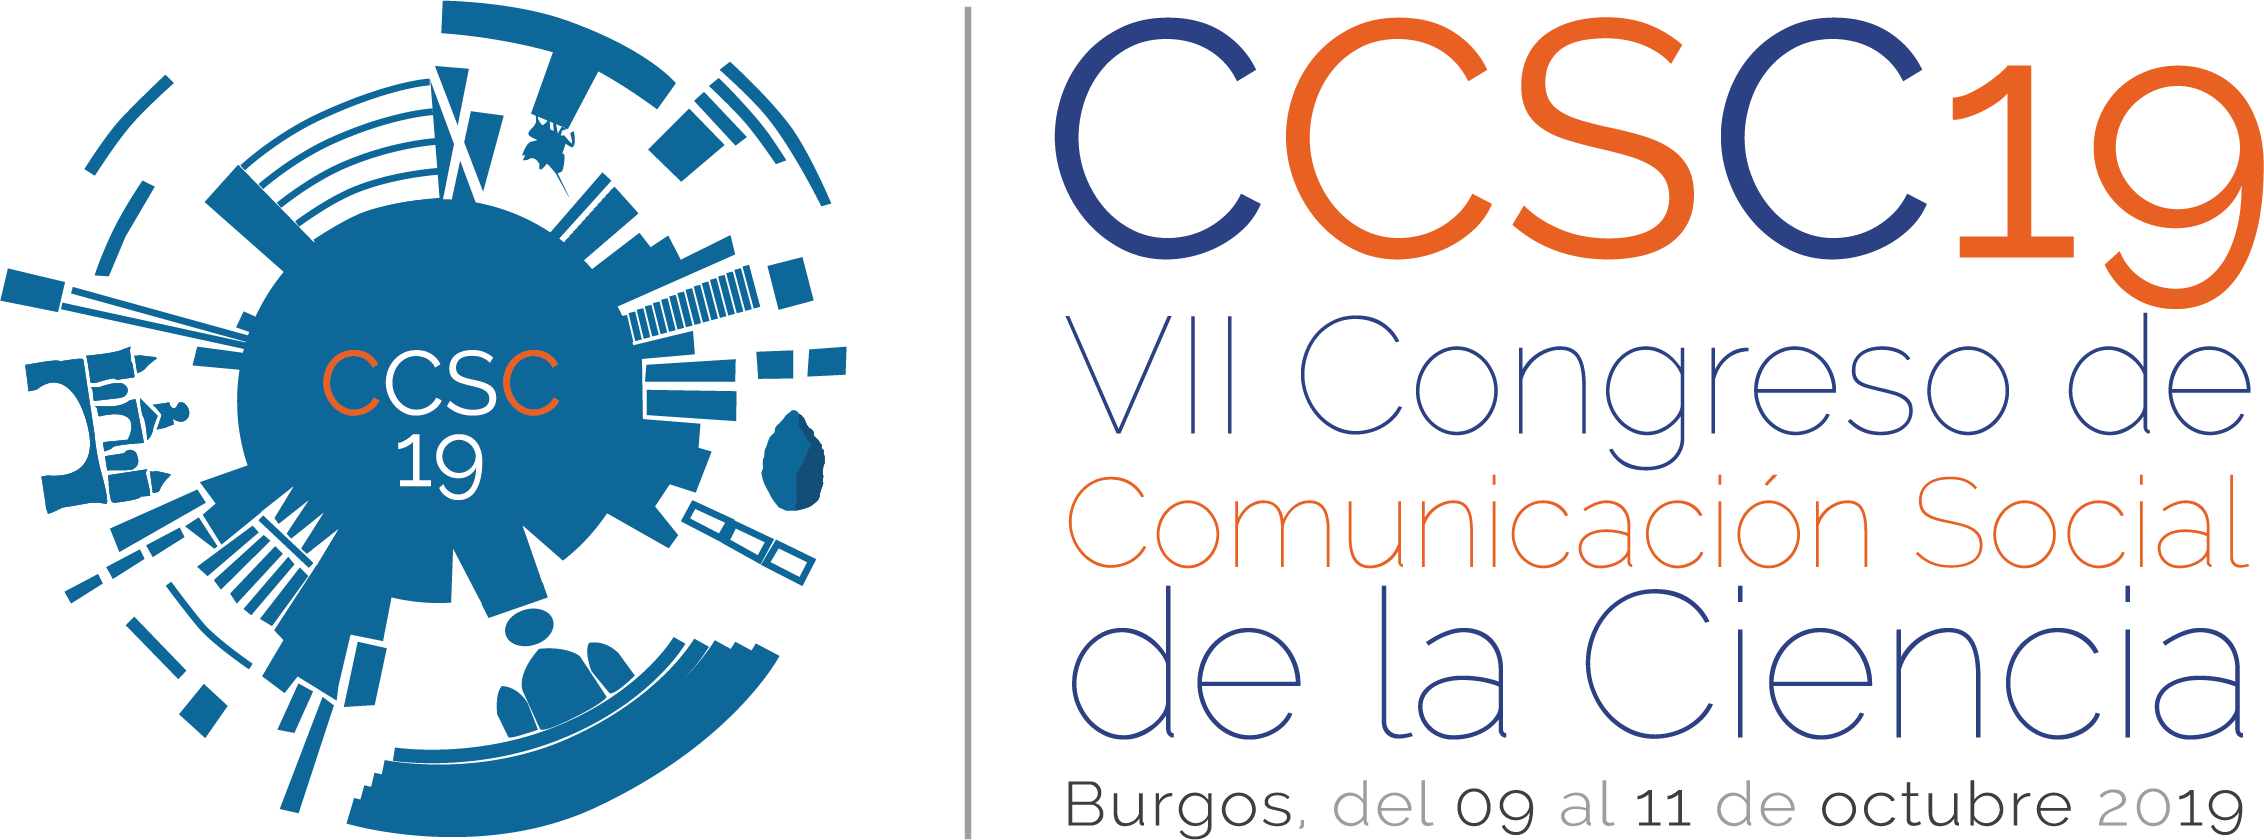 CCSC19